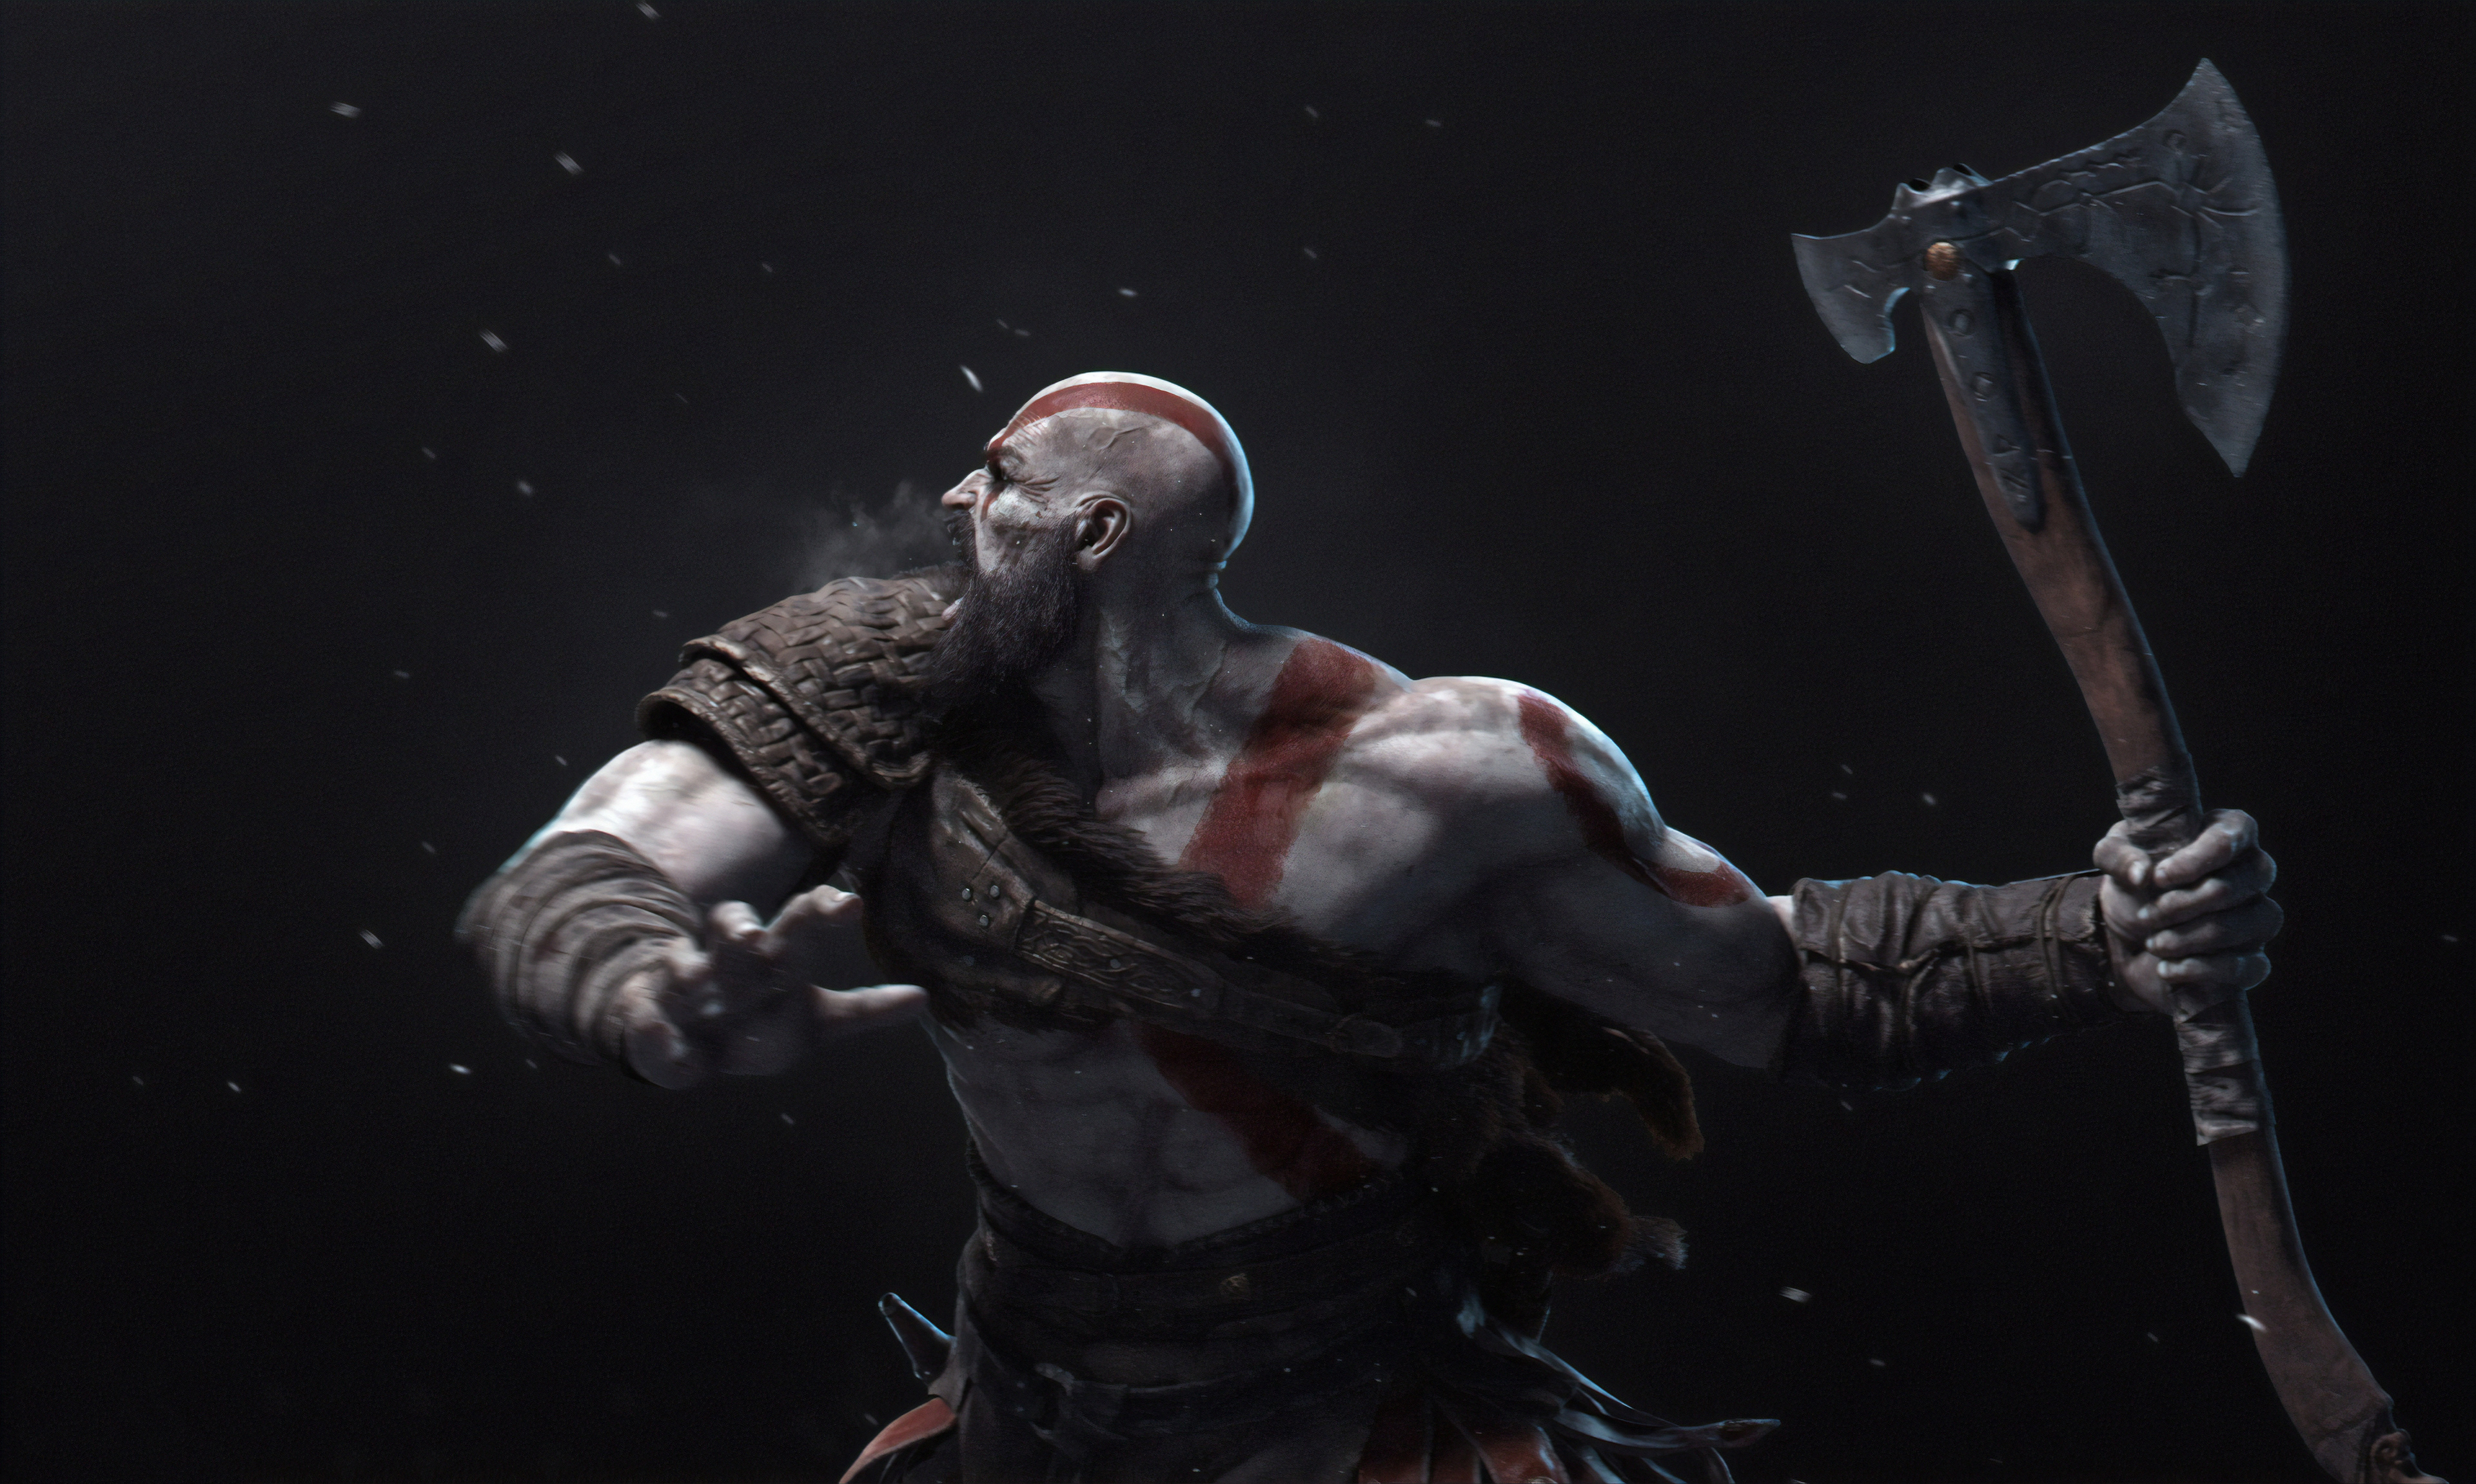 kratos (god of war), god of war, video game, axe, warrior Image for desktop